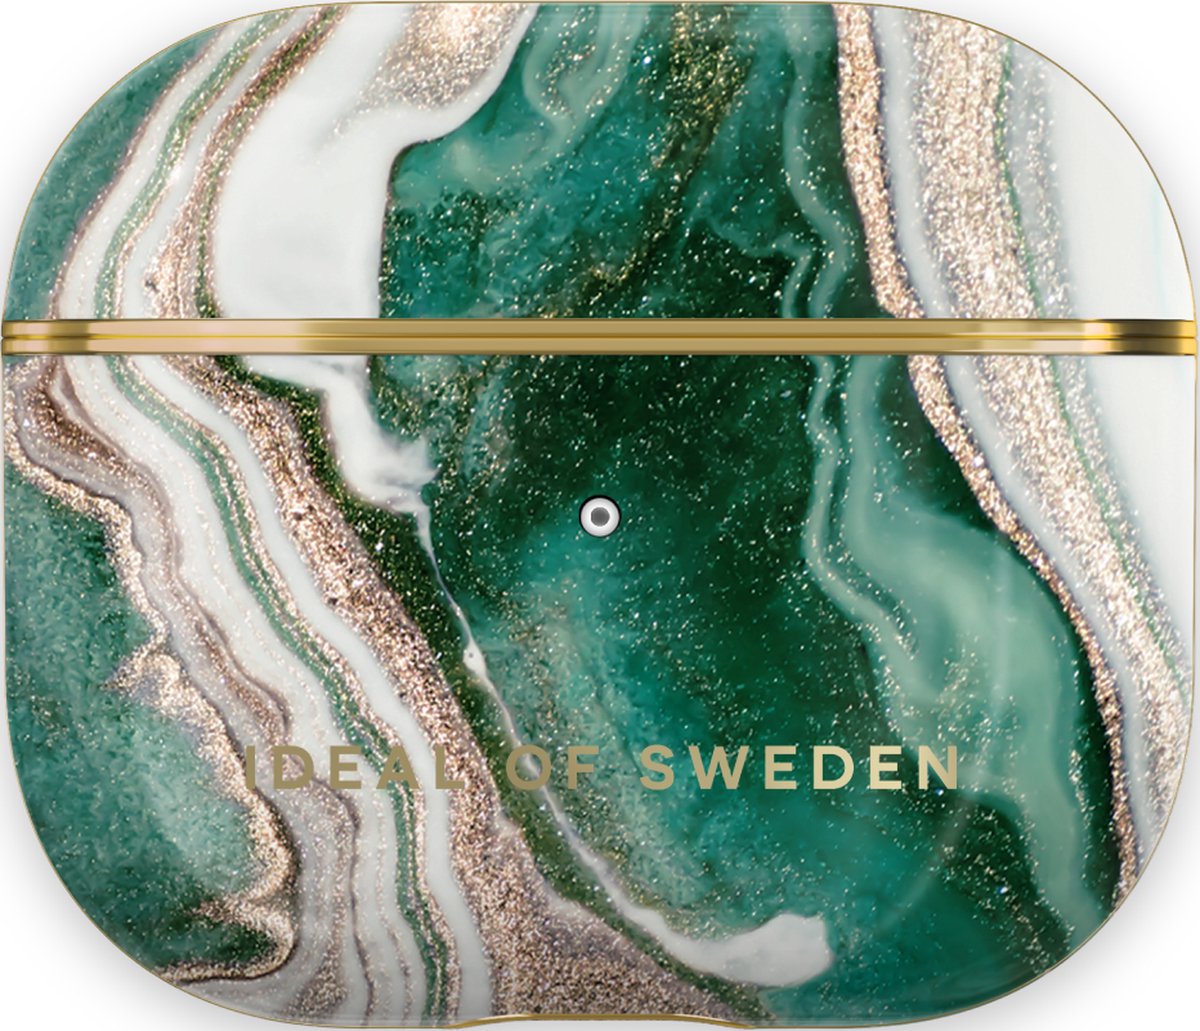 iDeal of Sweden AirPods Case Print Gen 3 Golden Jade Marble